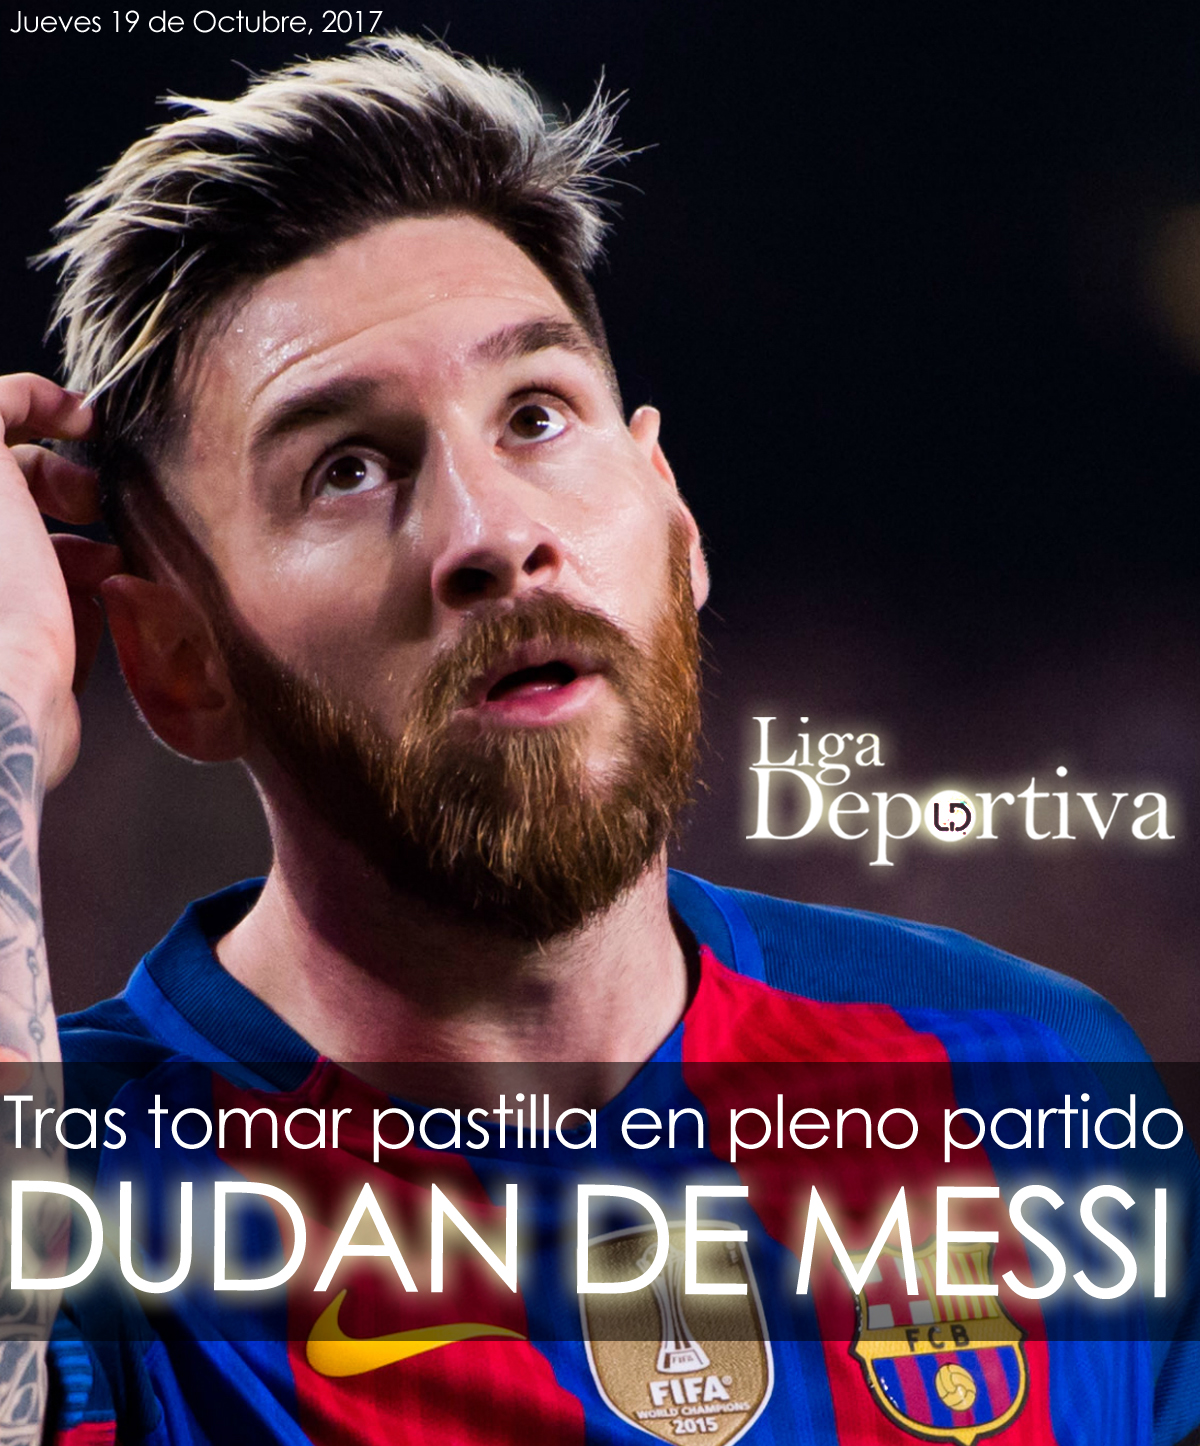 Dudan de Lionel Messi tras tomar pastilla en partido FC Barcelona - Olympiakos 